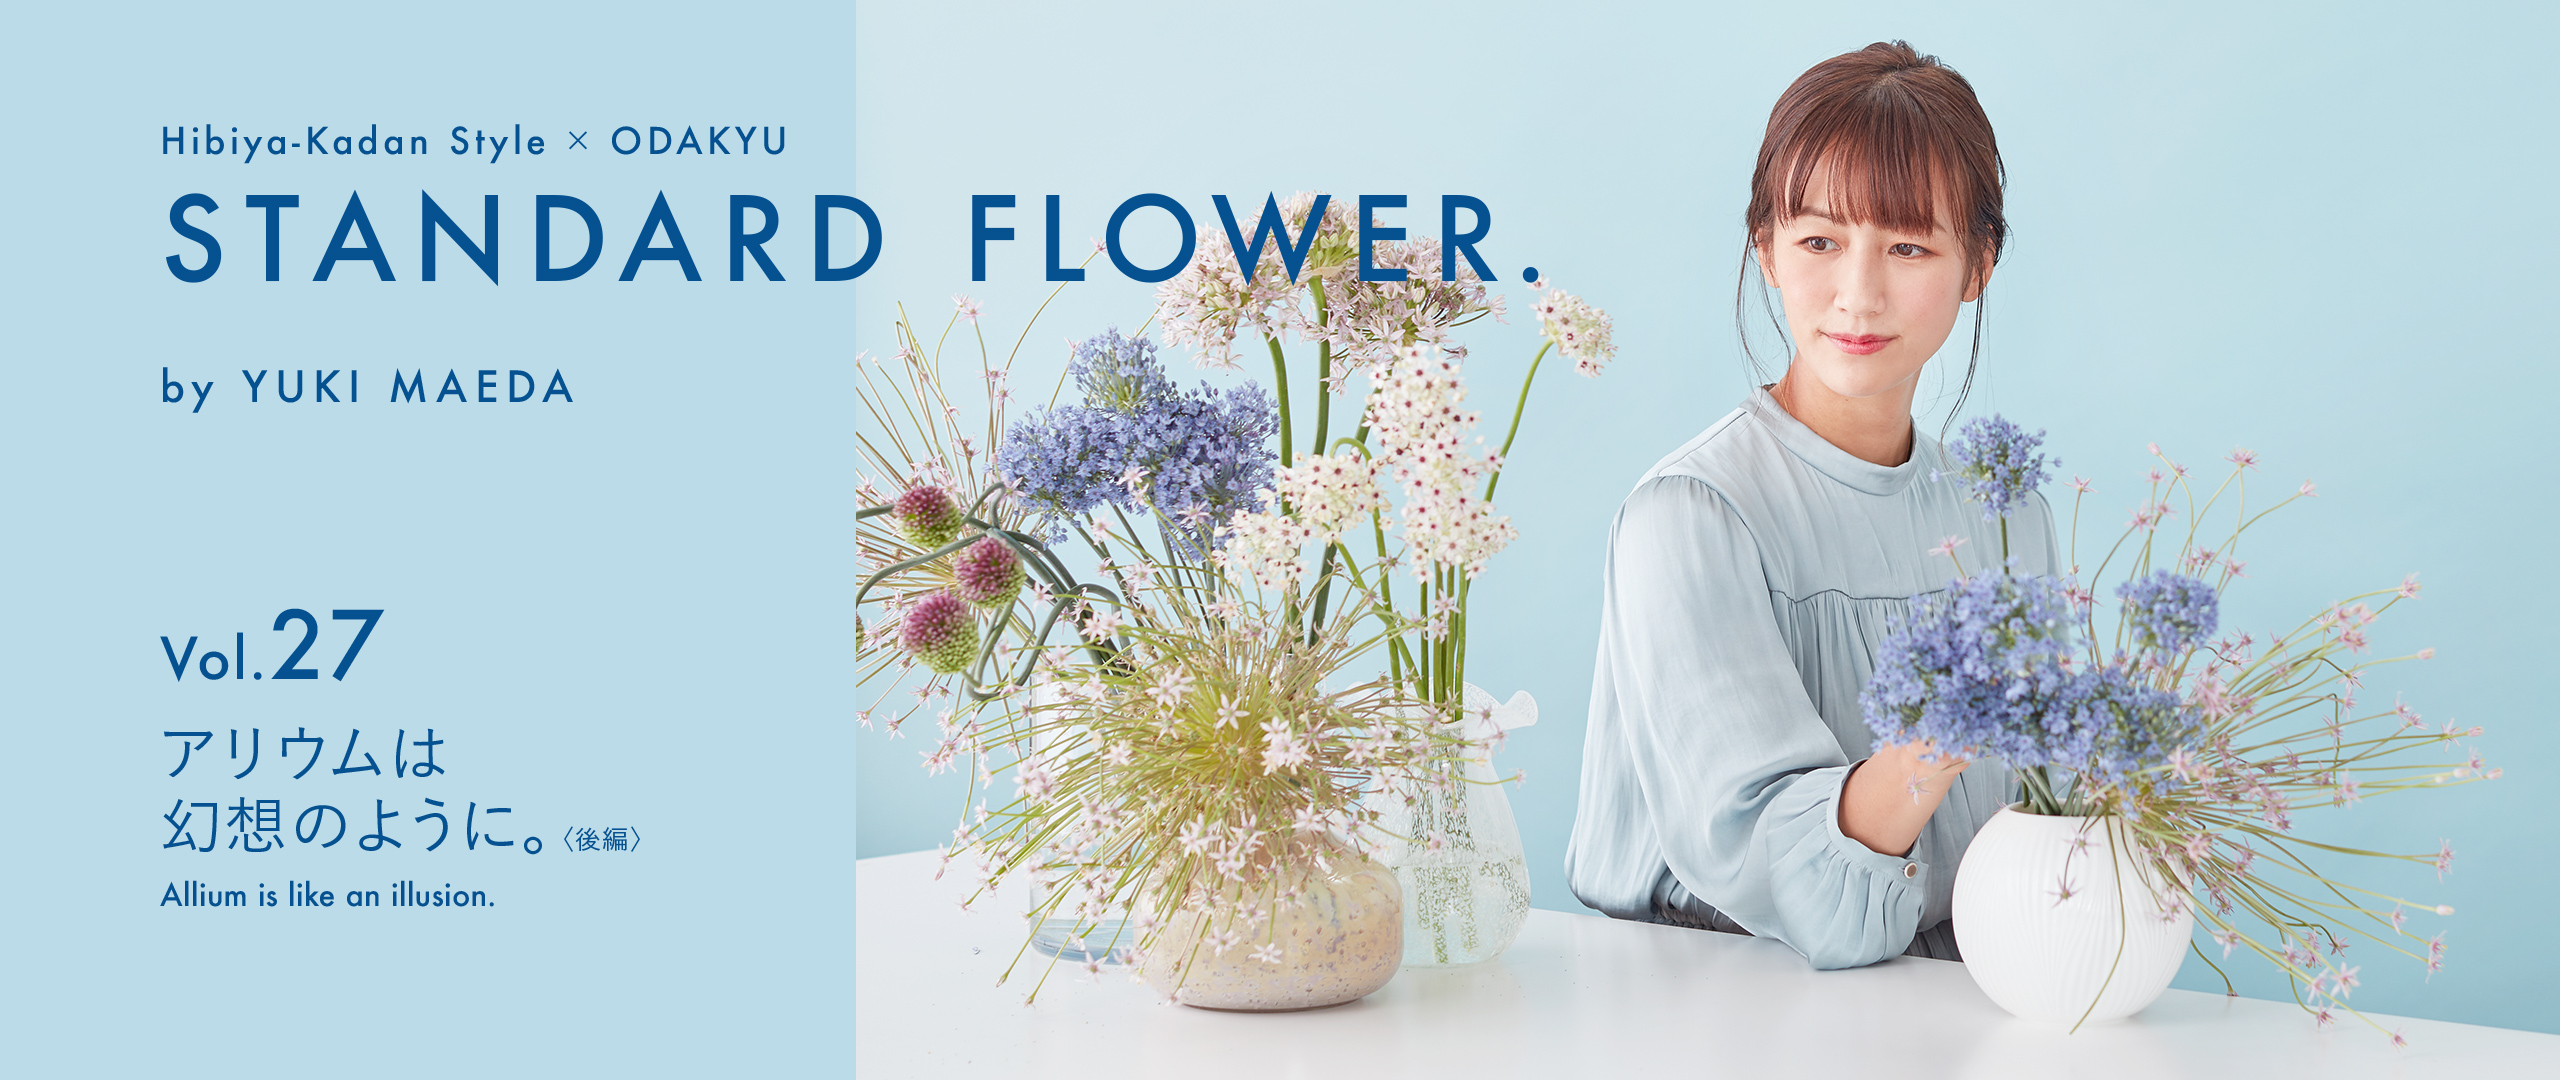 Standard Flower Vol 27 アリウムは幻想のように 後編 小田急ポイントカード Opカード